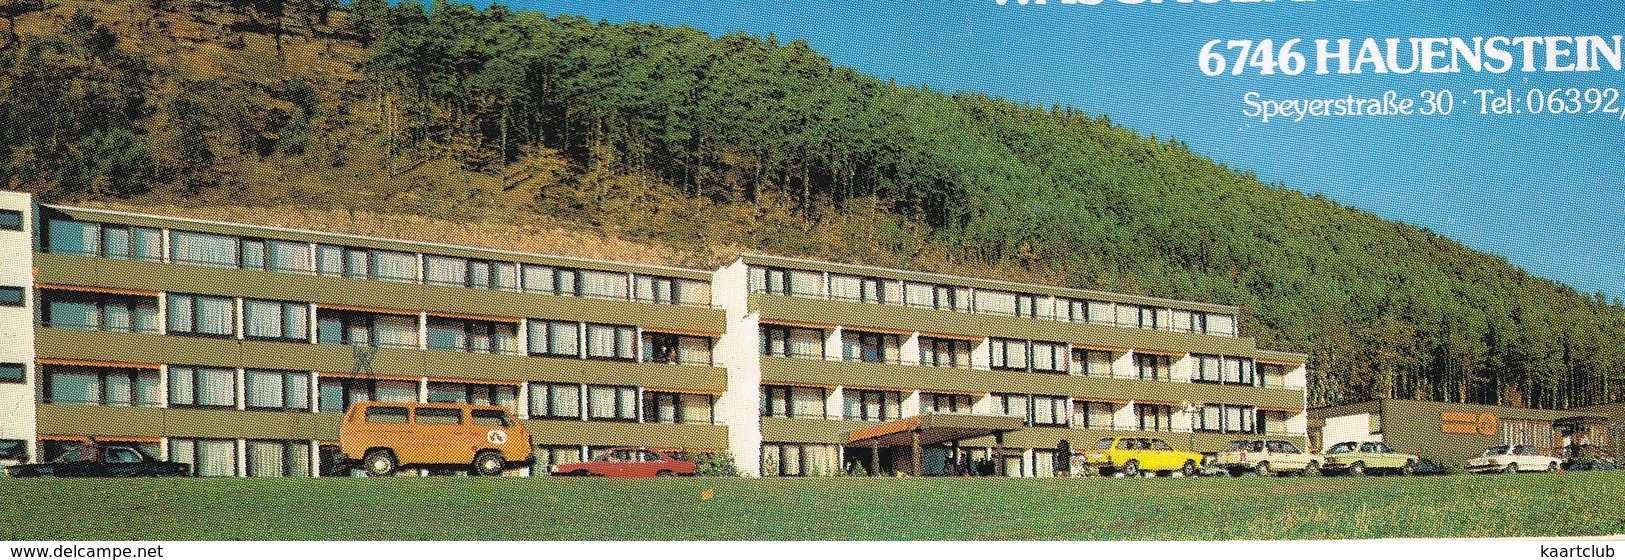 Hauenstein: VW TRANSPORTER - Hotel Wasgauland - Bundes Kegelbahn - (Pfalz) - Toerisme